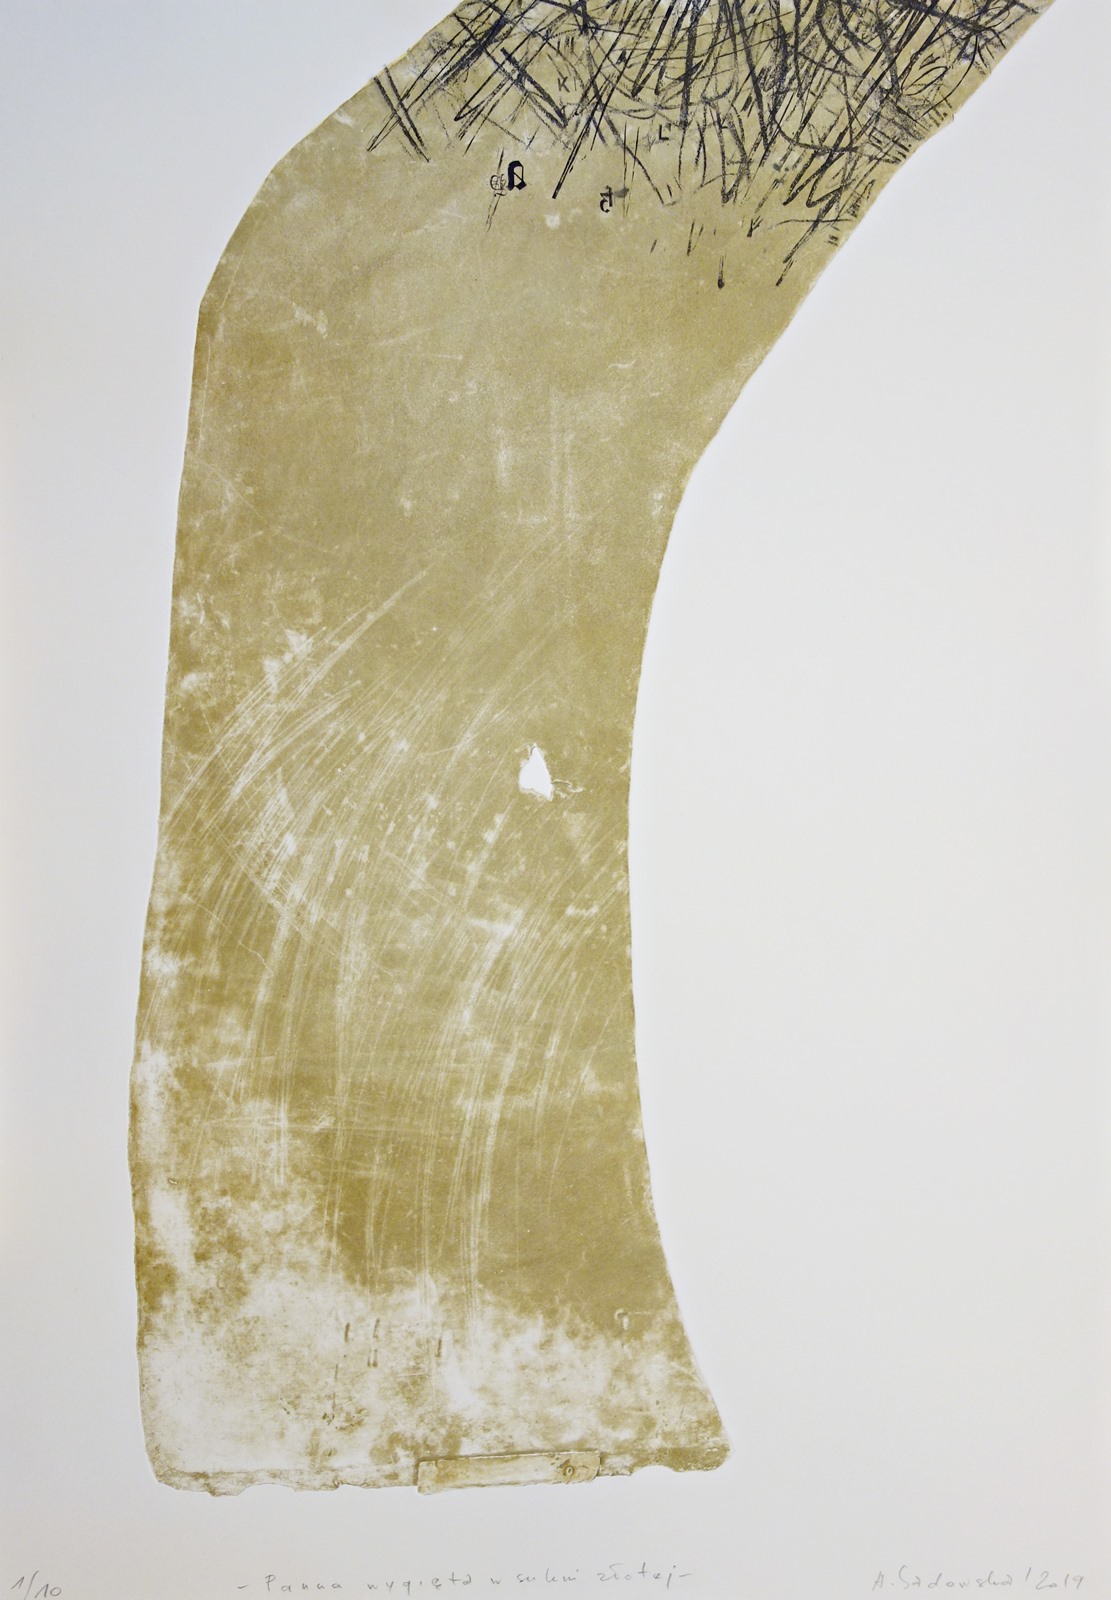 Anna Sadowska, Panna wygięta w sukni złotej, 2019, itaglio, 100 × 70 cm (źródło: materiały prasowe)